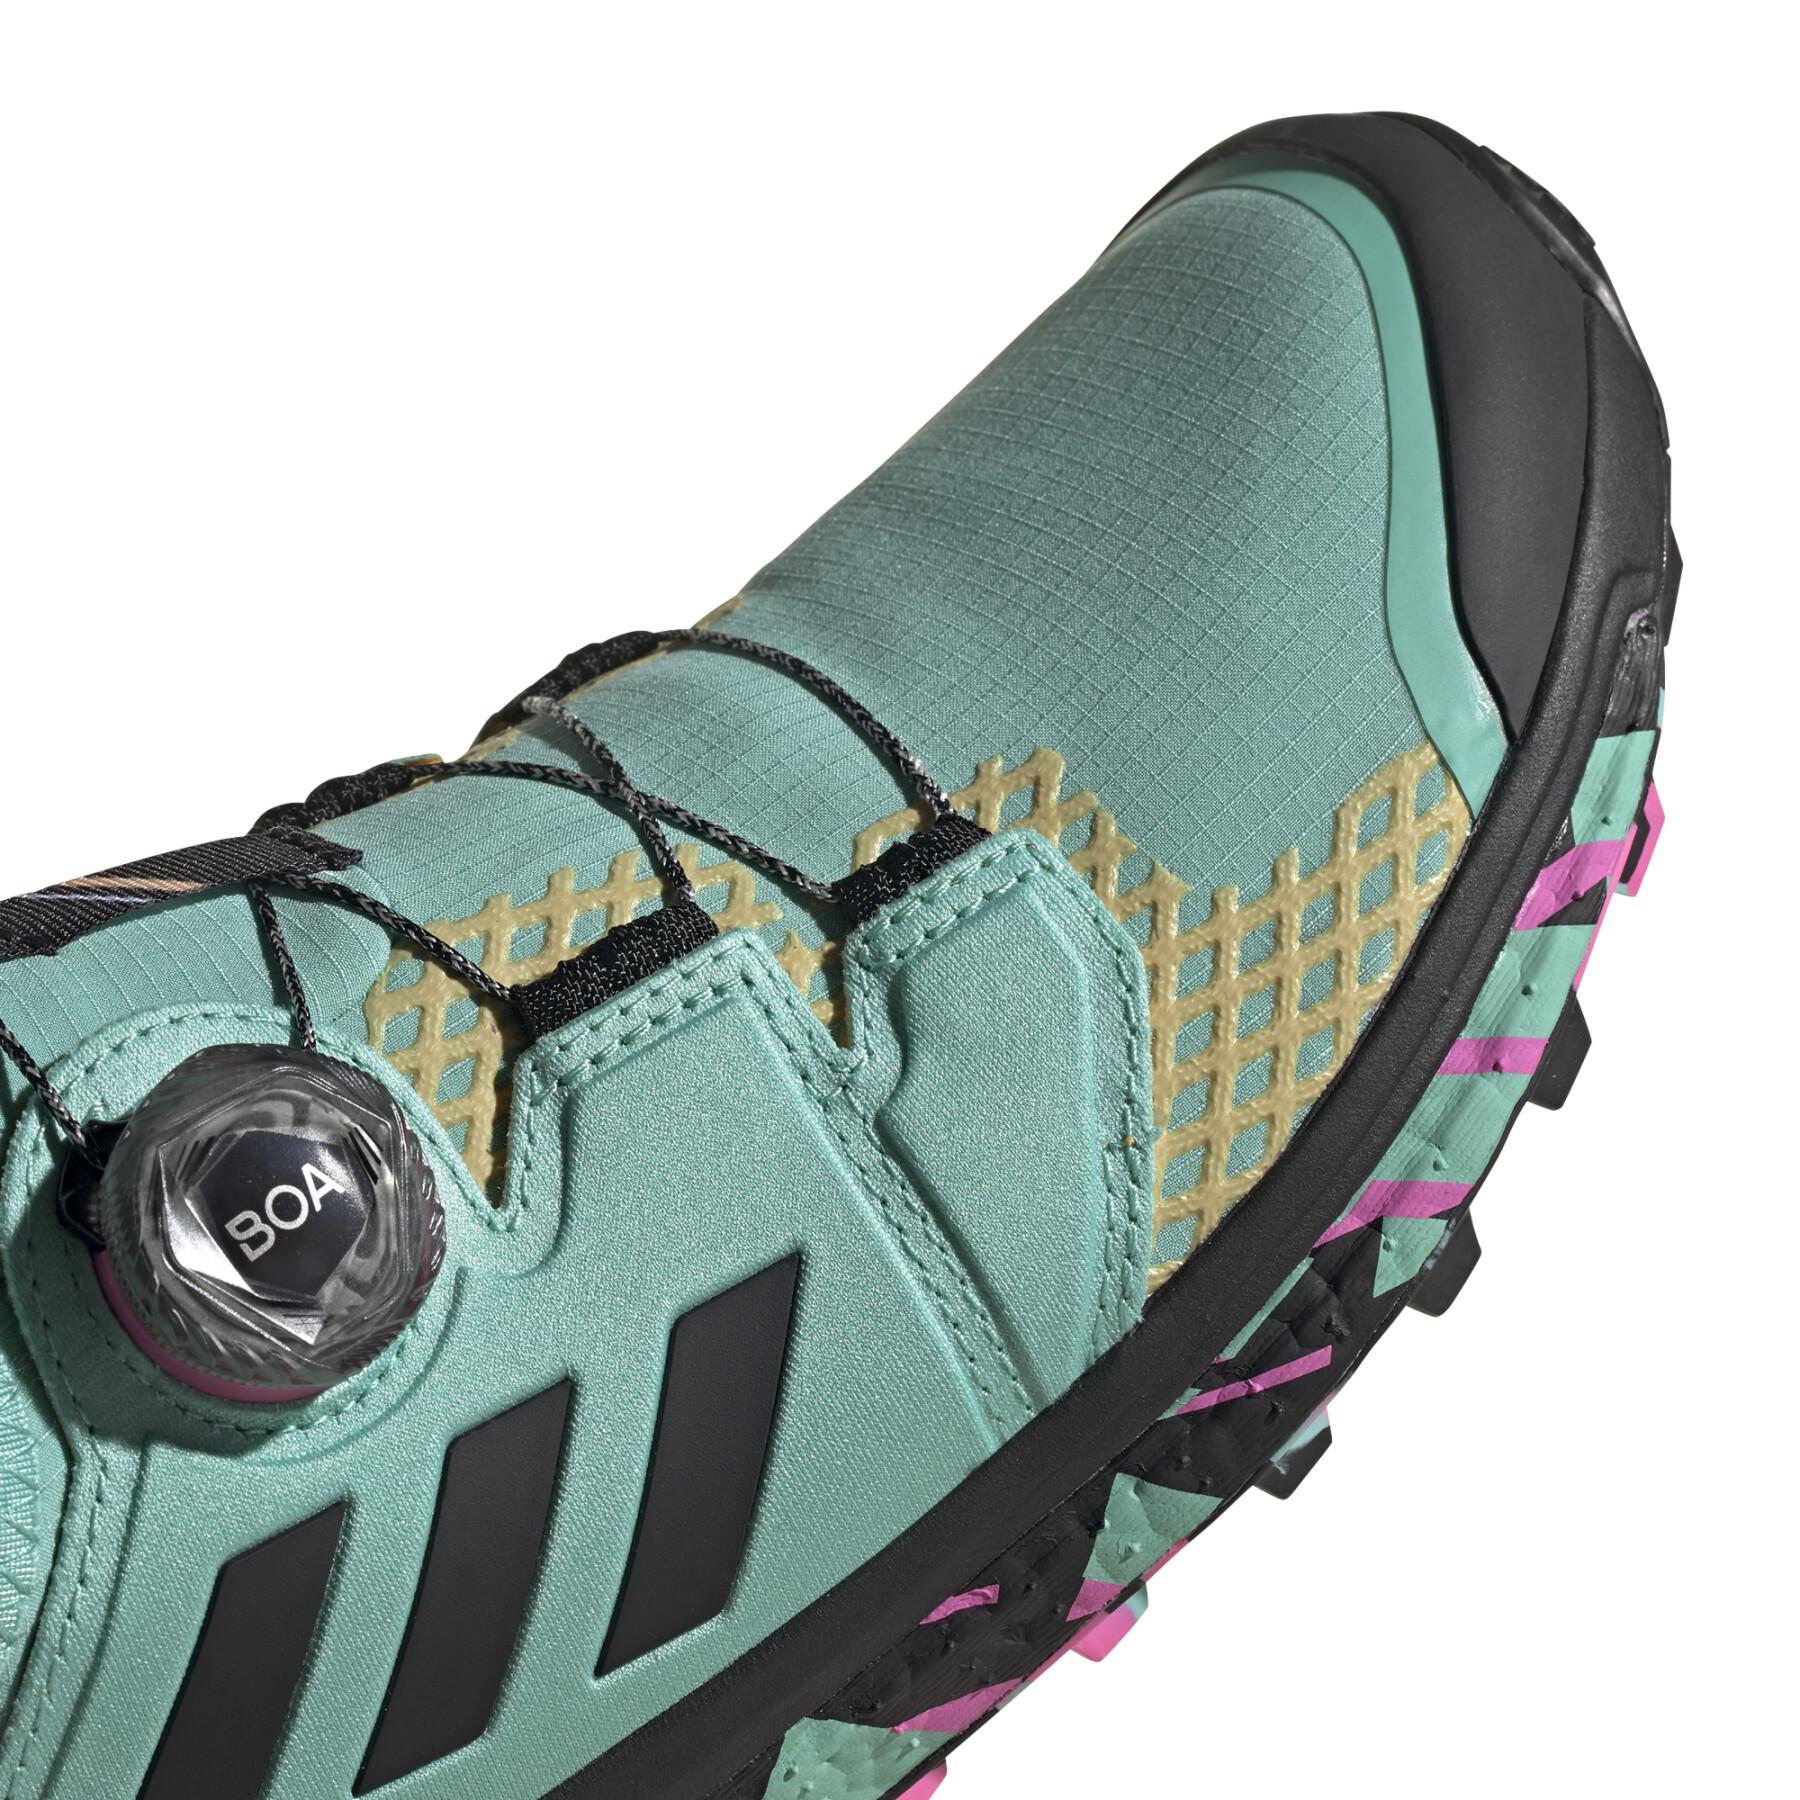 Buty trailowe dla kobiet adidas Terrex Agravic BOA